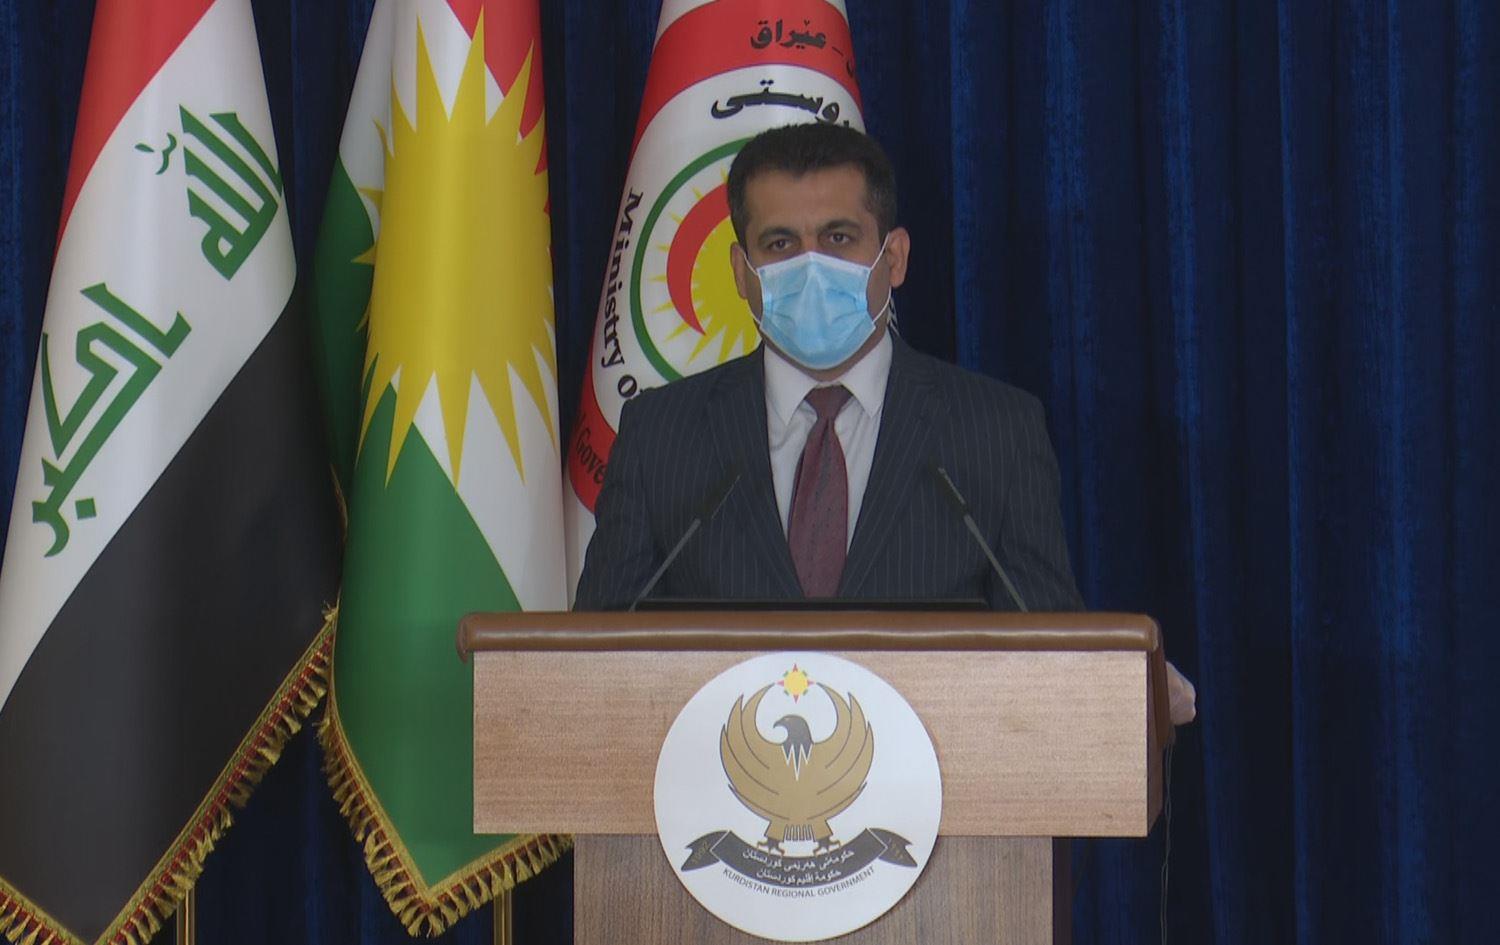  قال وزير صحة إقليم كردستان سامان برزنجي